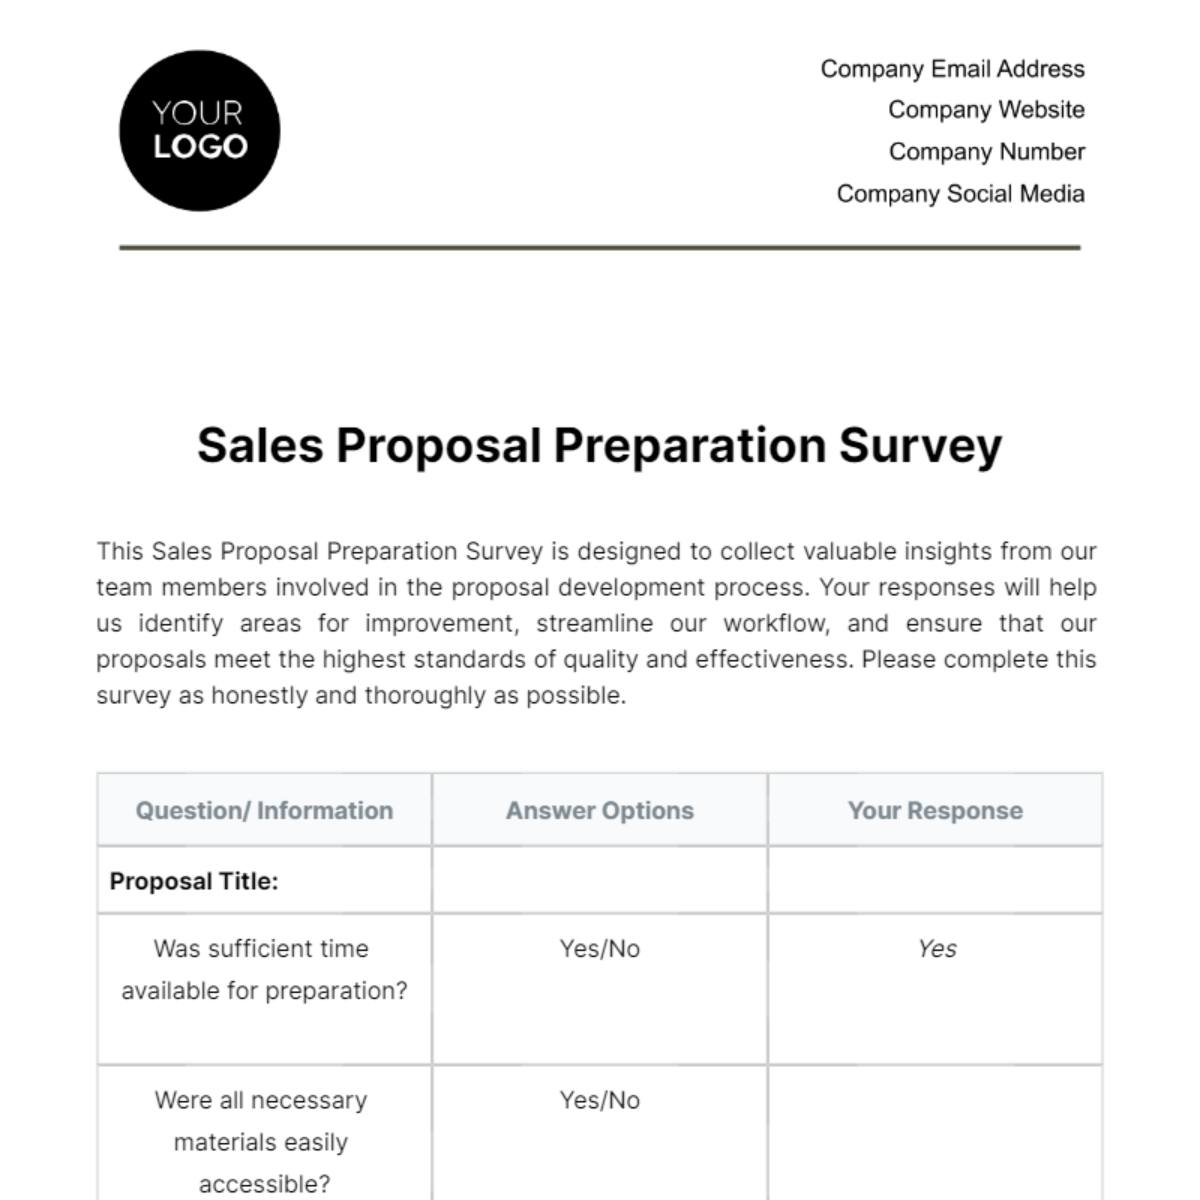 Sales Proposal Preparation Survey Template